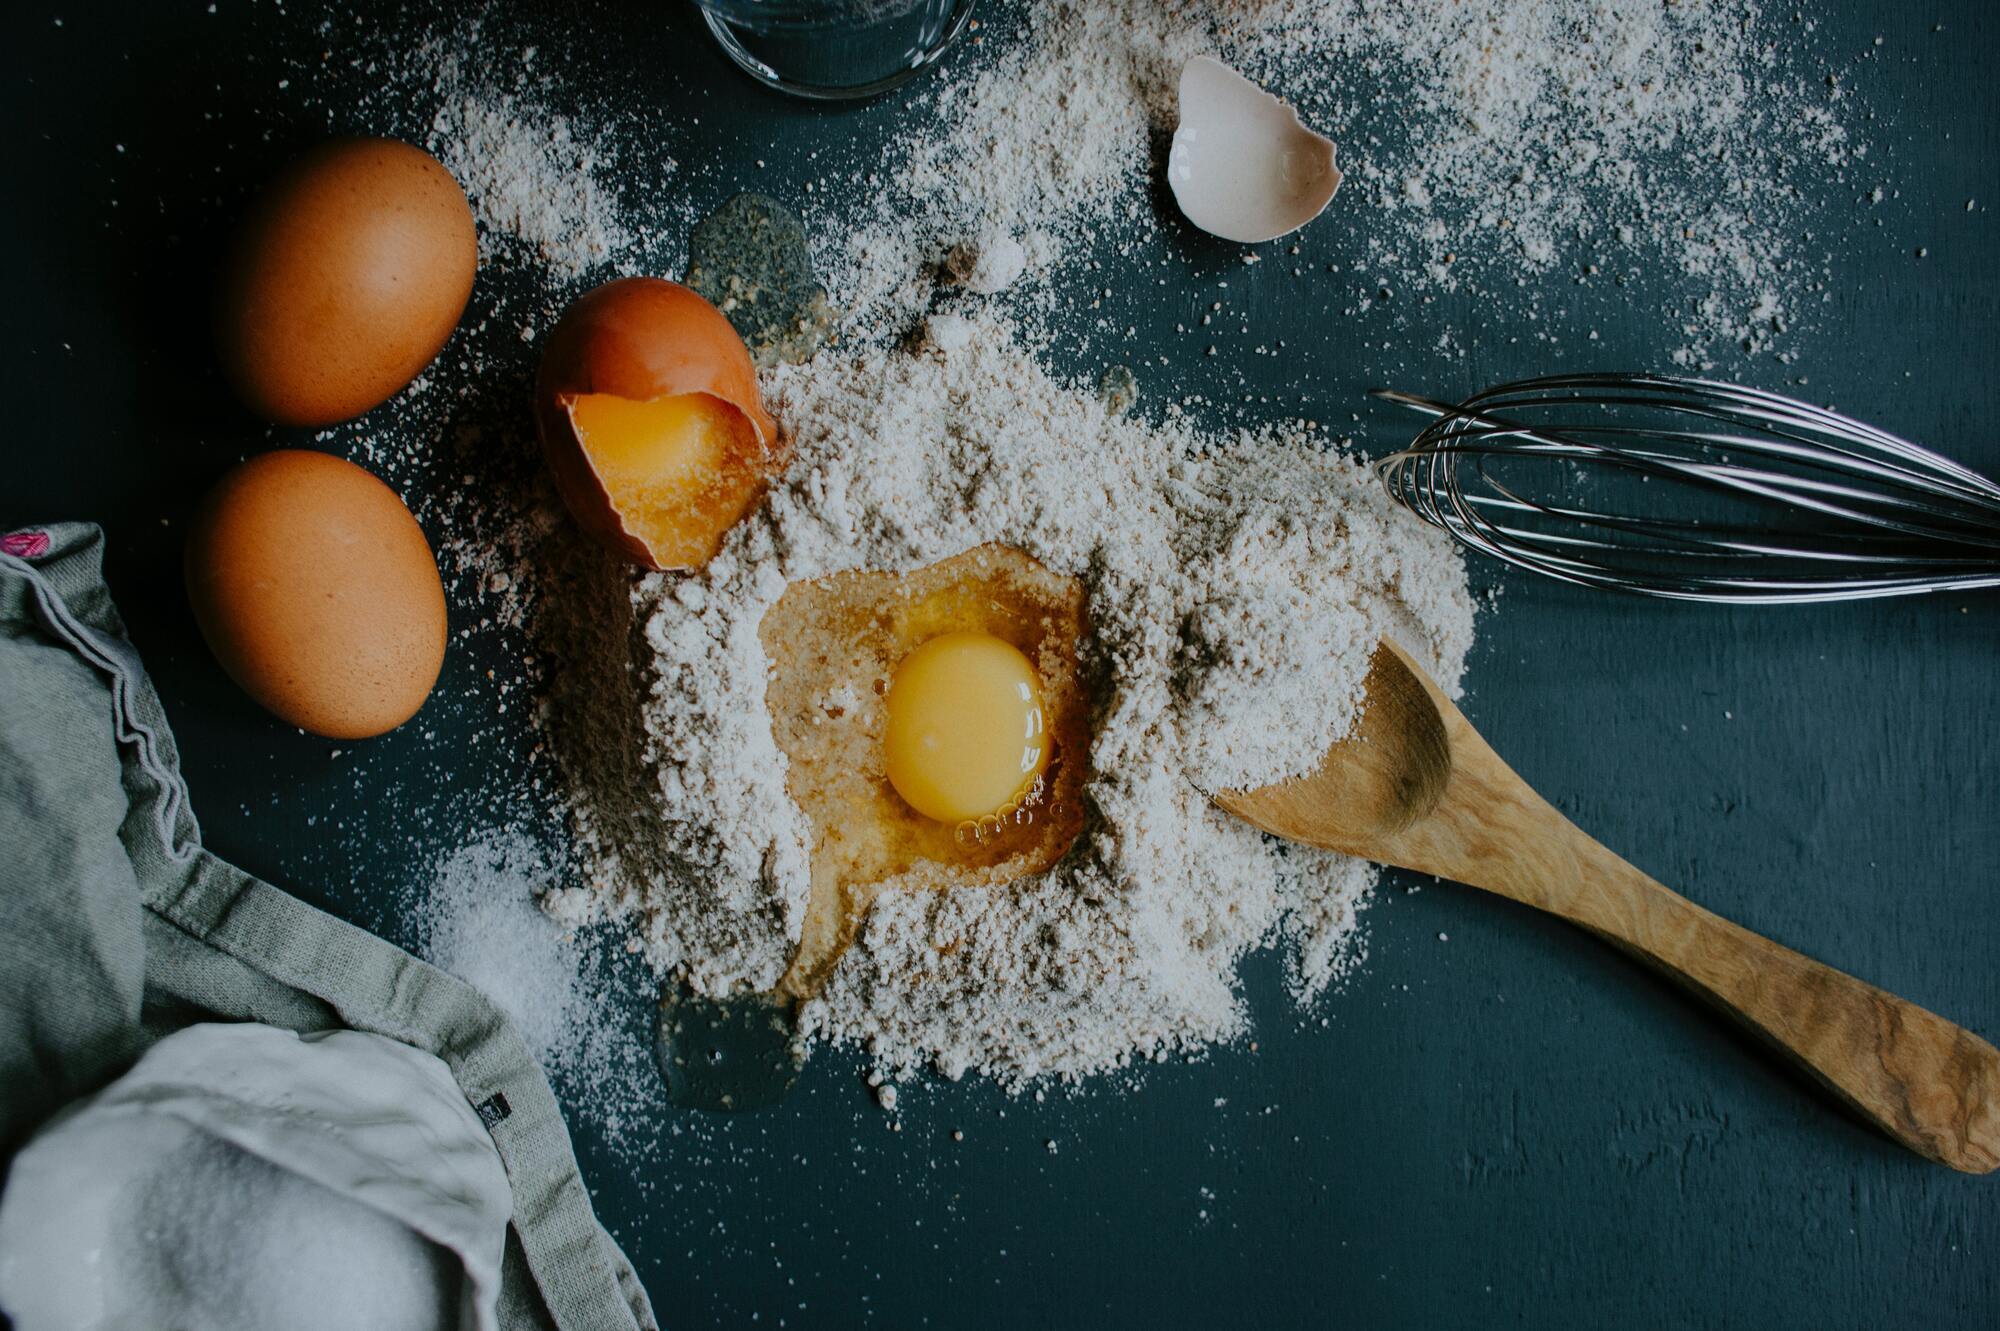 Flour and eggs